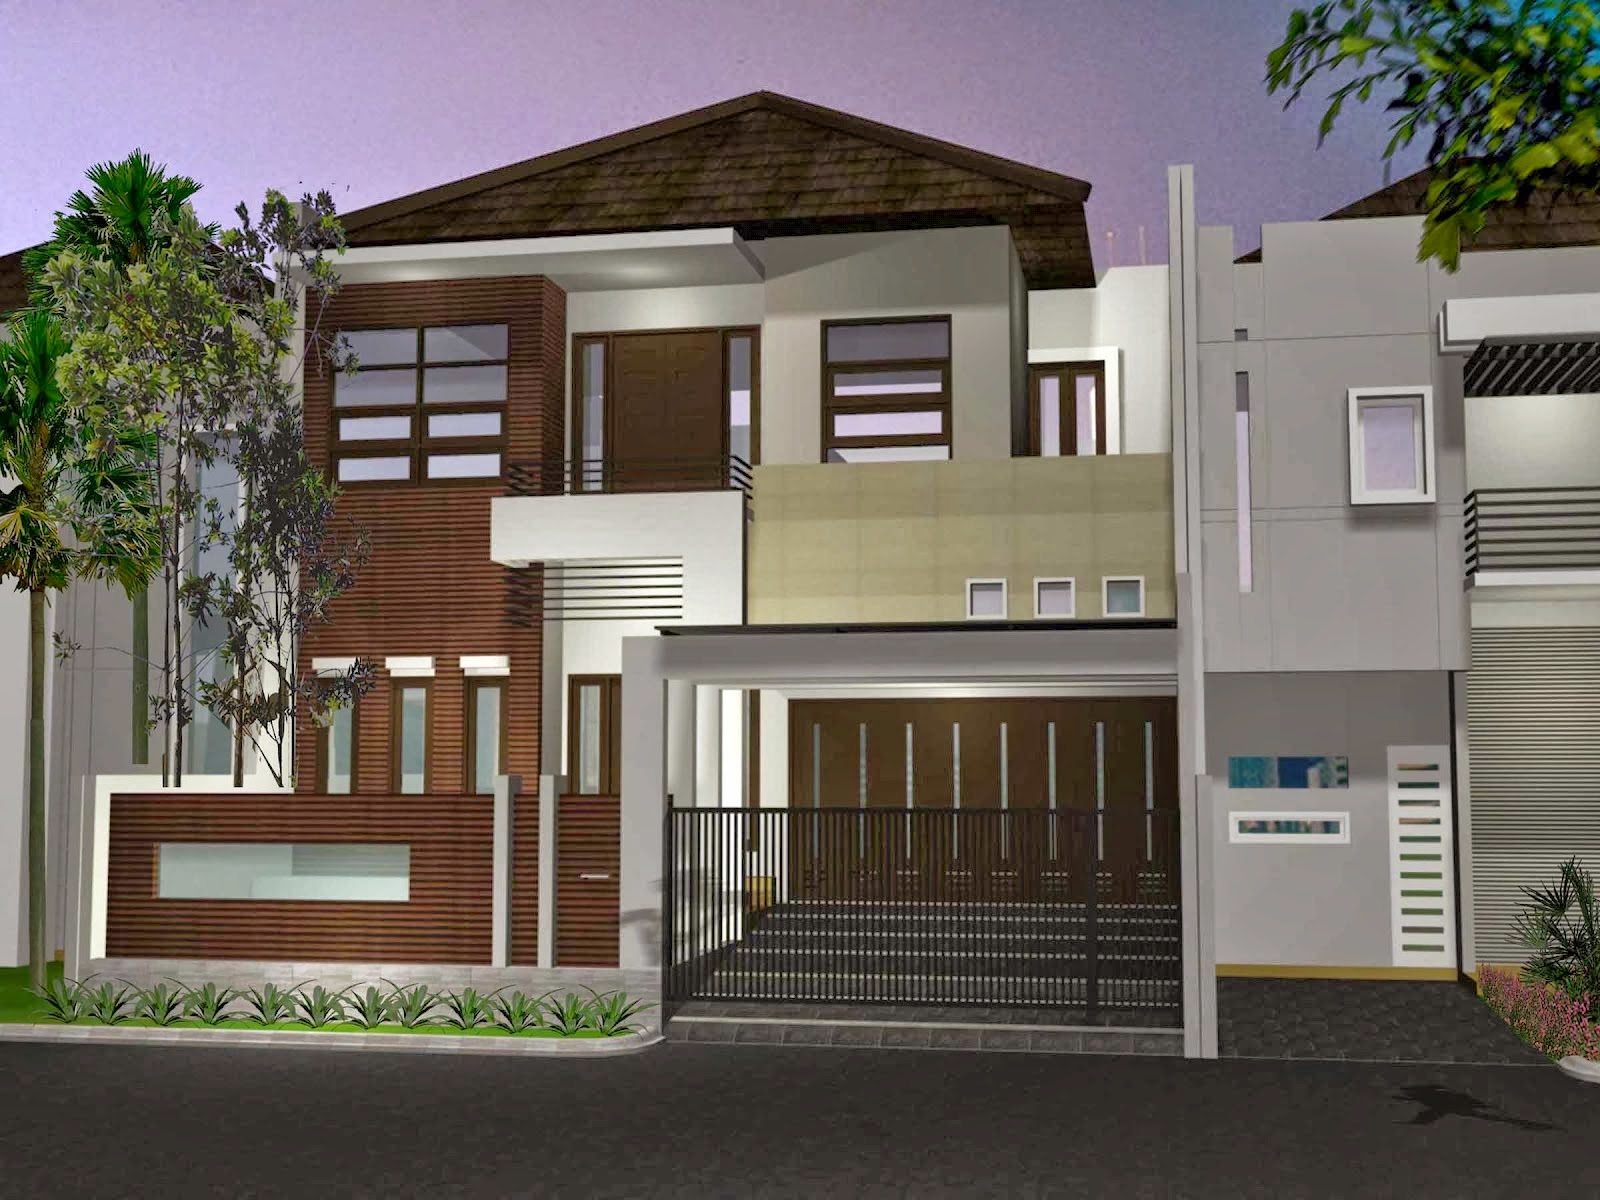 Jual Rumah Tangerang Design Rumah Minimalis Terfavorit 2015